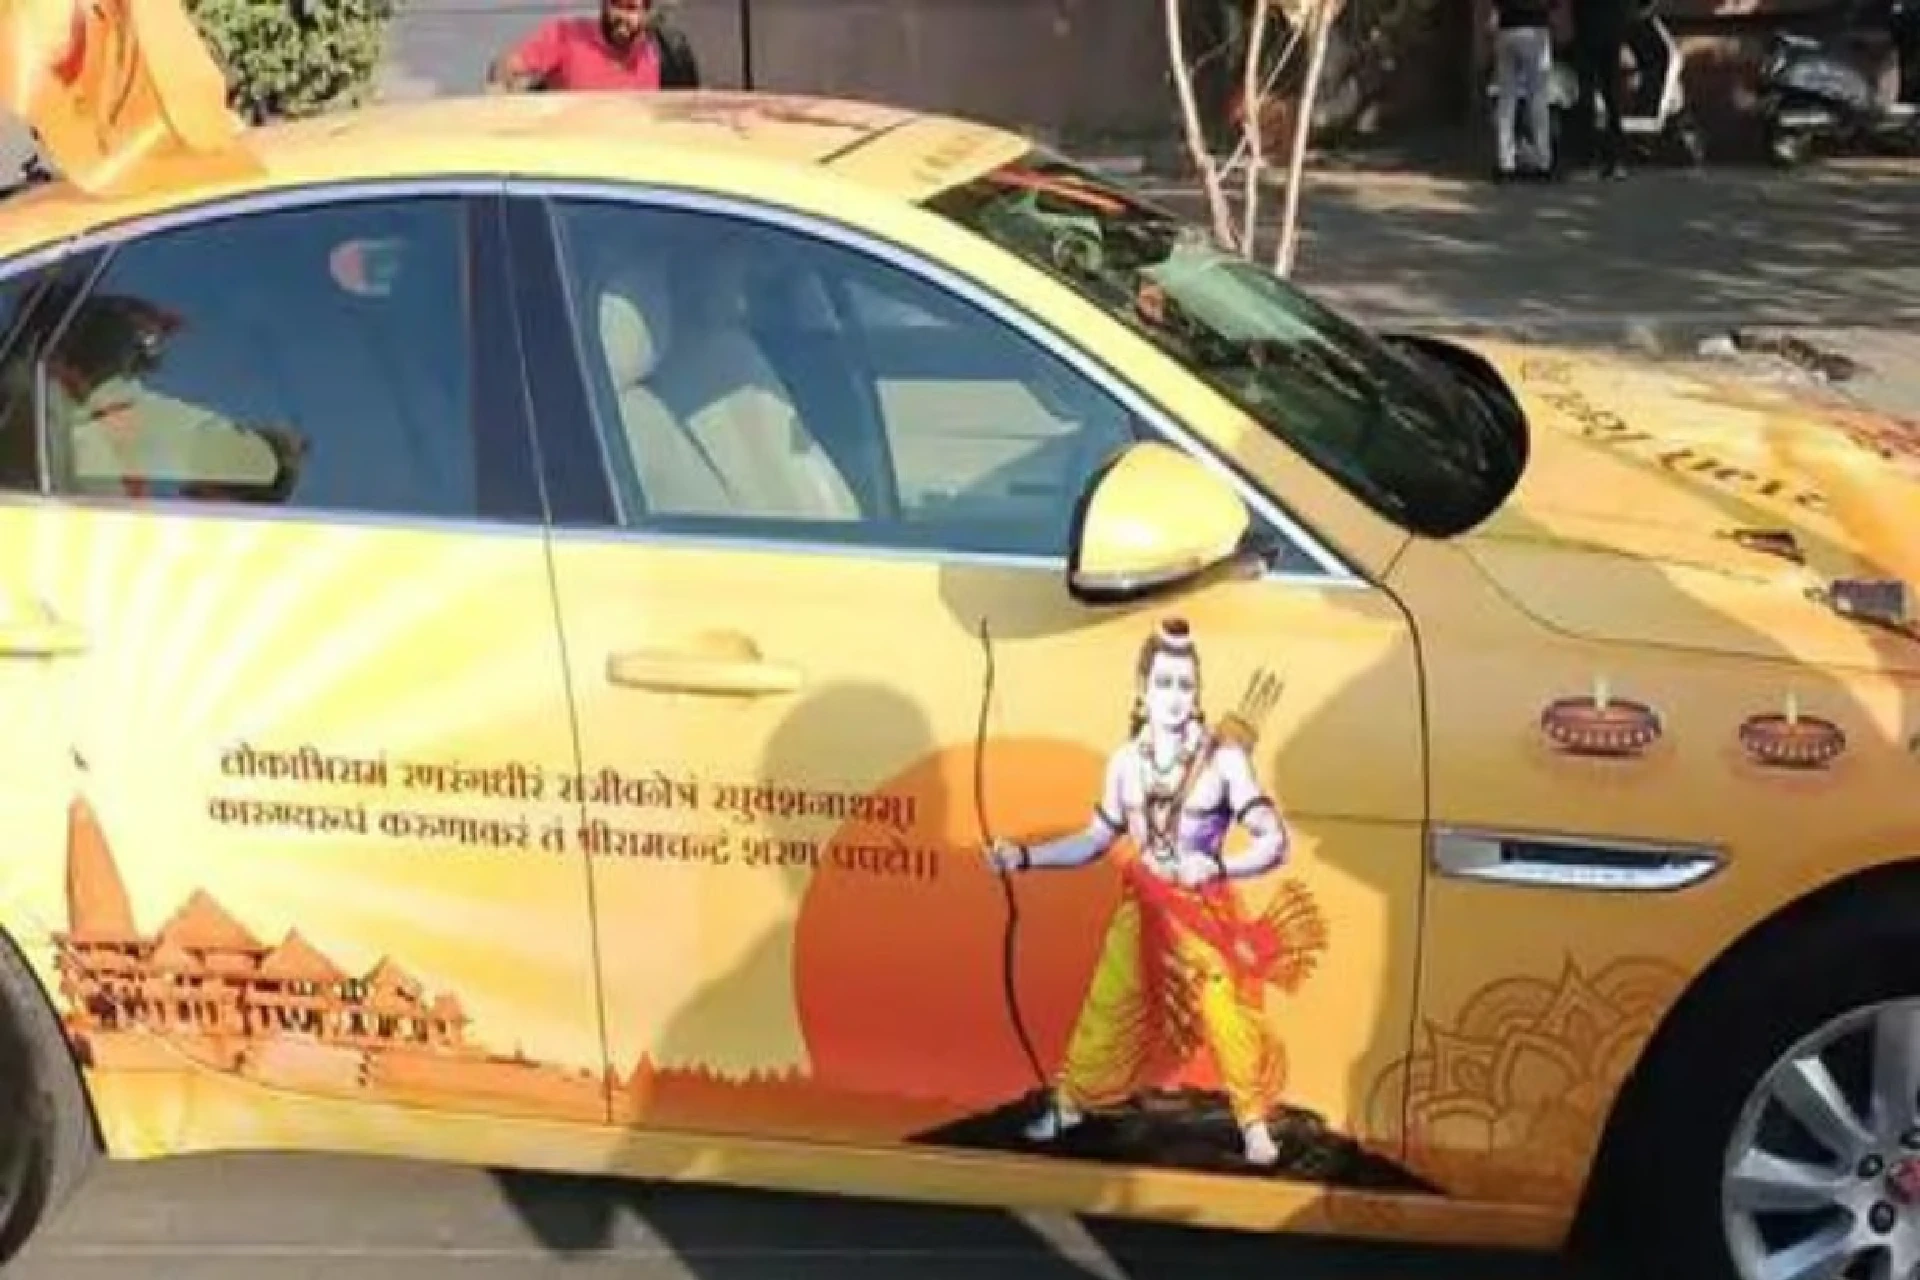 Ram themed car